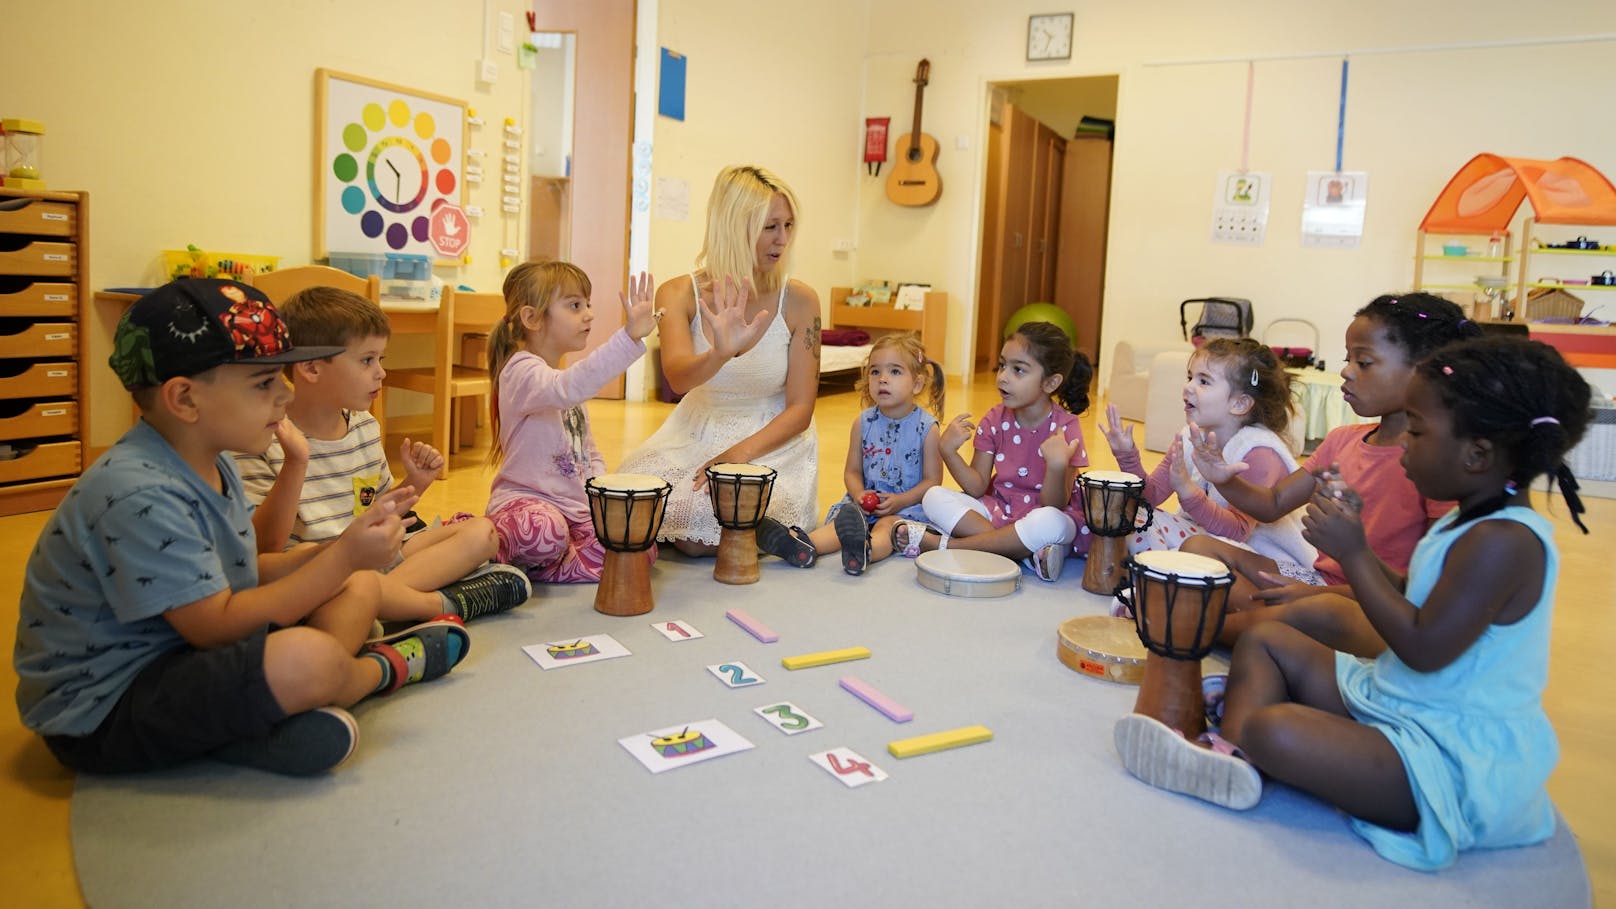 "Ich kann bis zehn zählen", singen die Kinder im Chor. Mit einem neuen Konzept vermittelt Elementarpädagogin Denise Garbardi Mathematik über Musik.